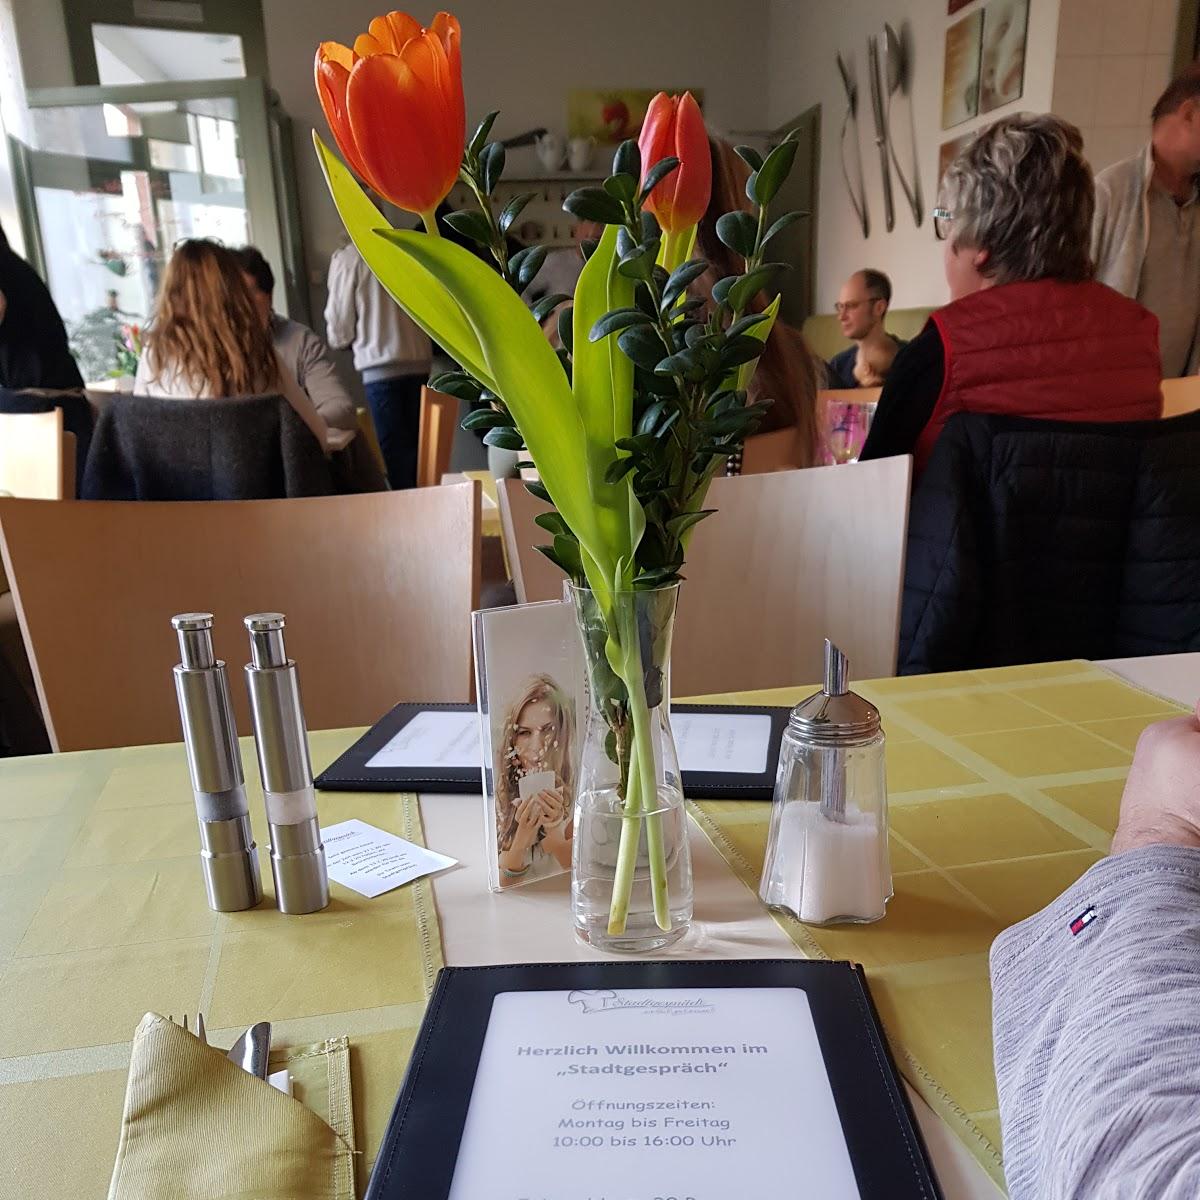 Restaurant "Stadtgespräch - einfach gut essen!" in Blankenburg (Harz)